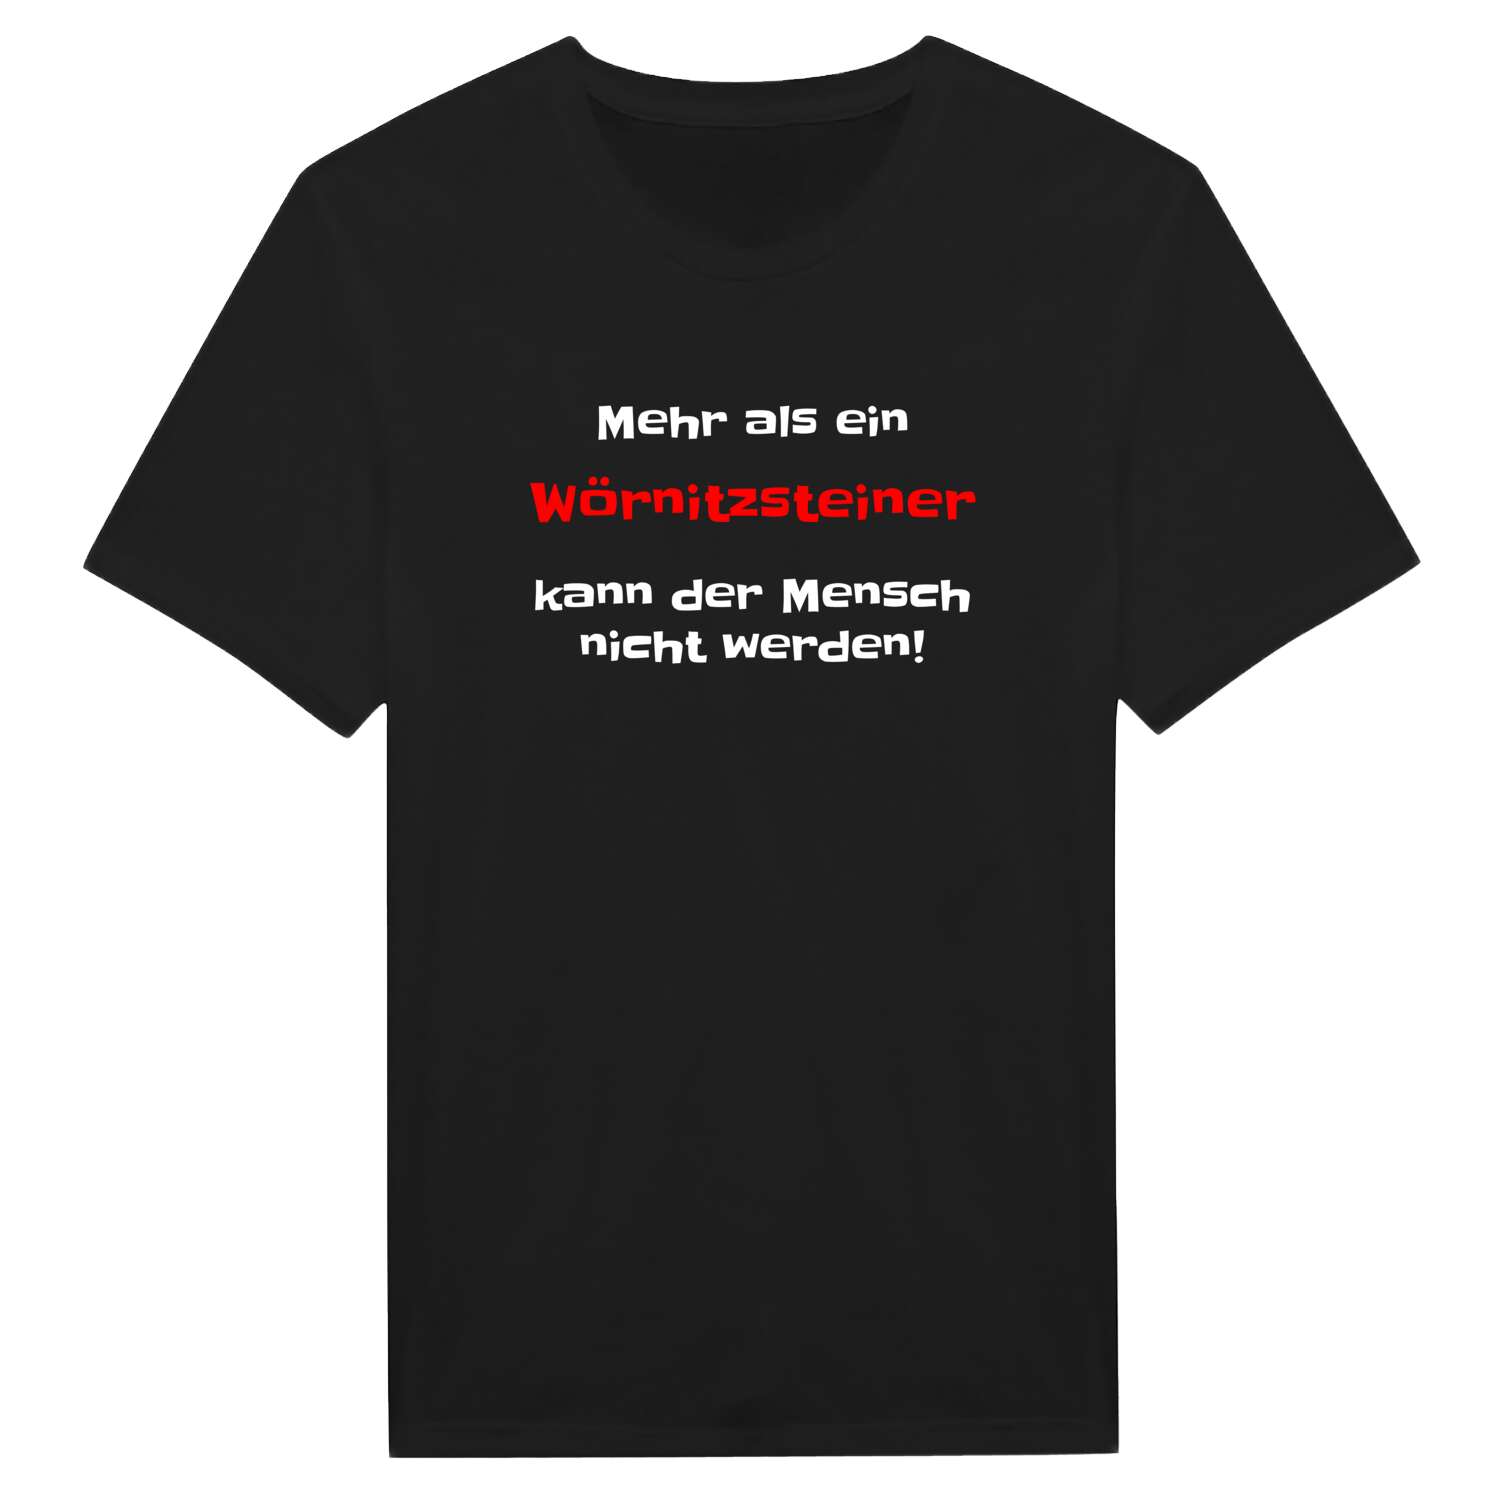 Wörnitzstein T-Shirt »Mehr als ein«